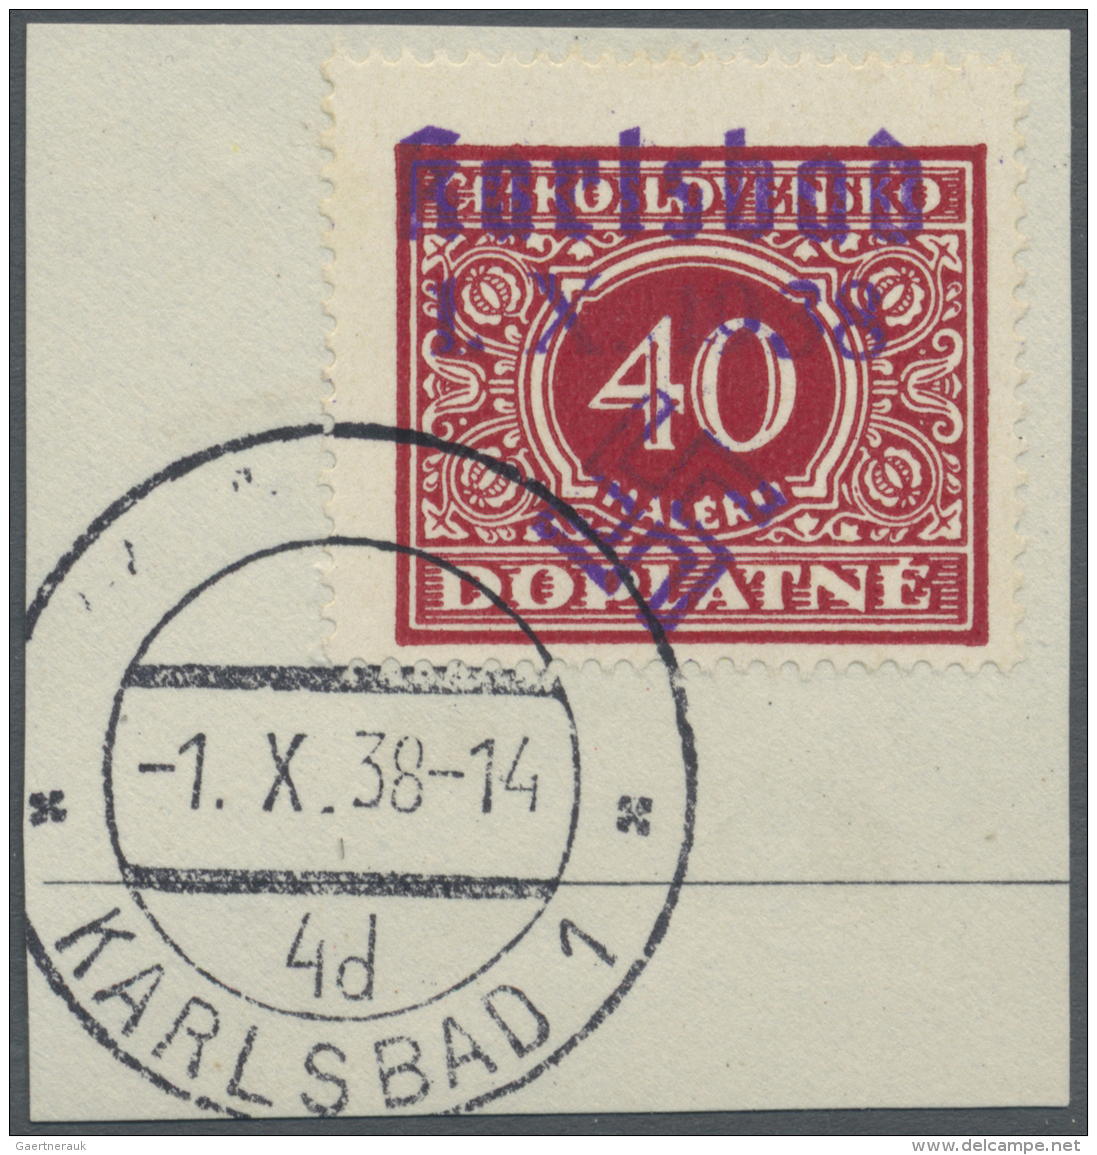 Sudetenland - Karlsbad: 1938, 40 H. Portomarke Mit Ersttagsstempel "KARLSBAD 4d 1.X.38" Auf Briefst&uuml;ck, Kabinett, S - Sudetenland